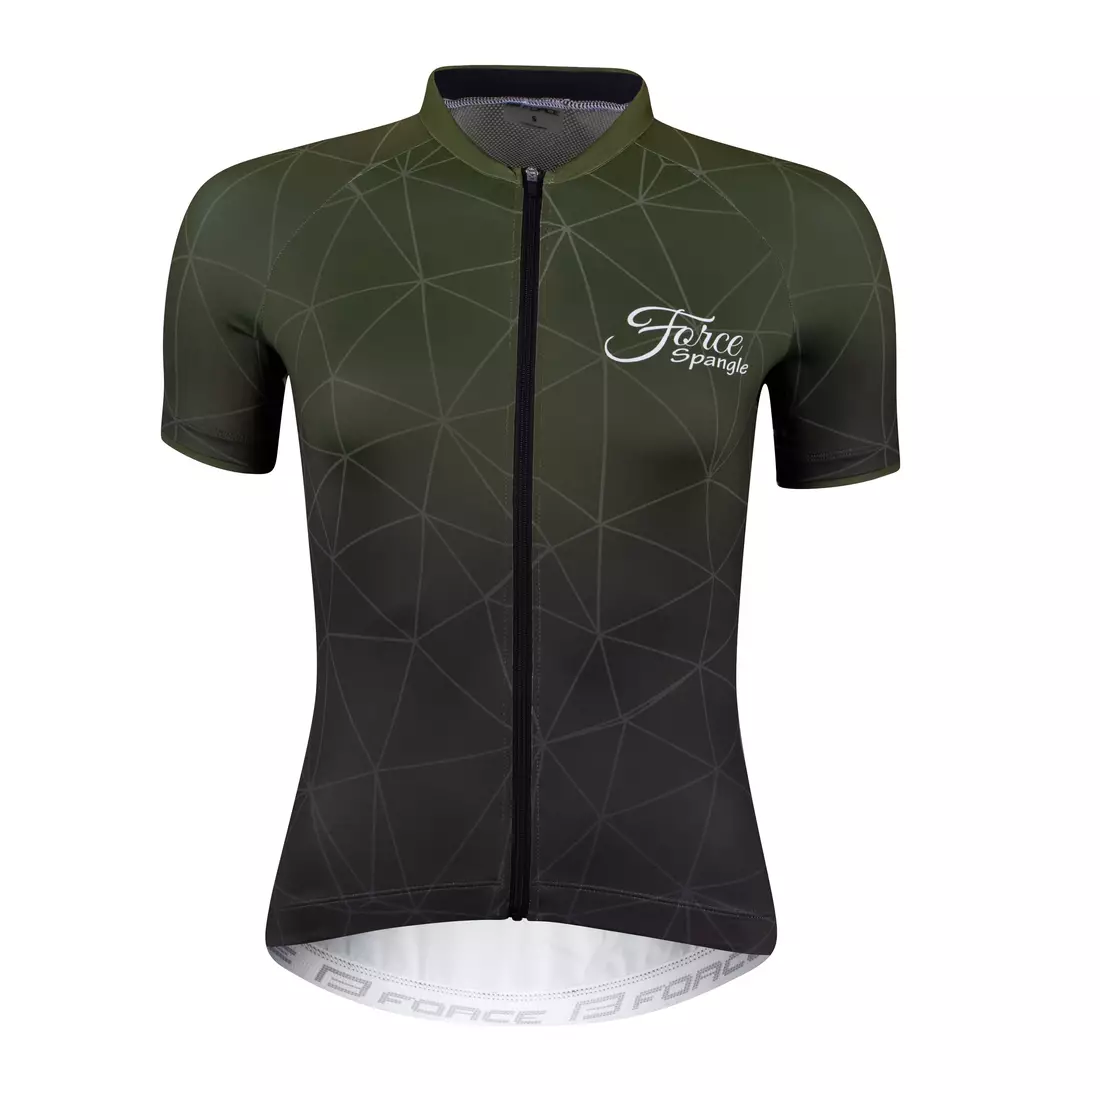 FORCE SPANGLE dámský cyklistický dres, ARMY/zelená